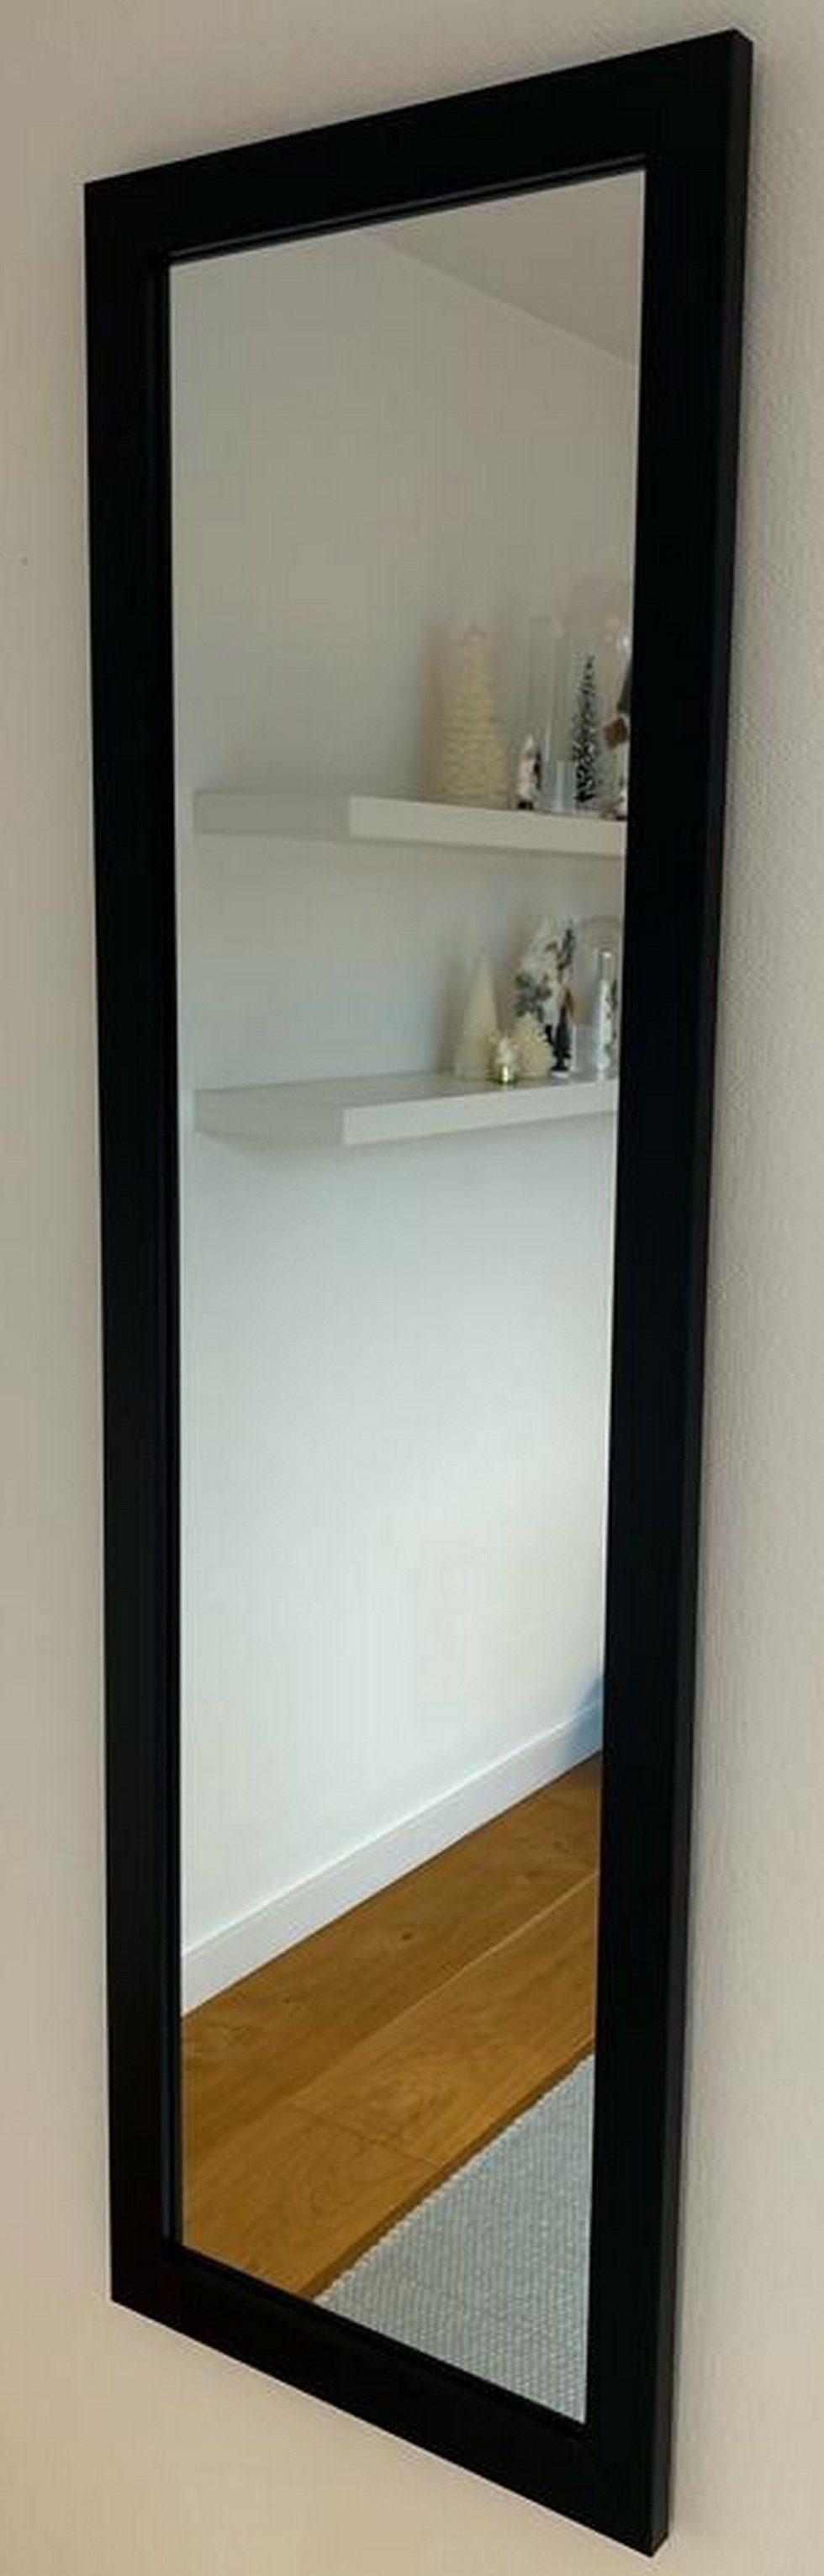 Deko-Werk 24 Your-Homestyle 40 x Eiche Rahmen, 130 Kathi Wandspiegel Ganzkörperspiegel cm schwarz Farbe Wandspiegel Holz mit